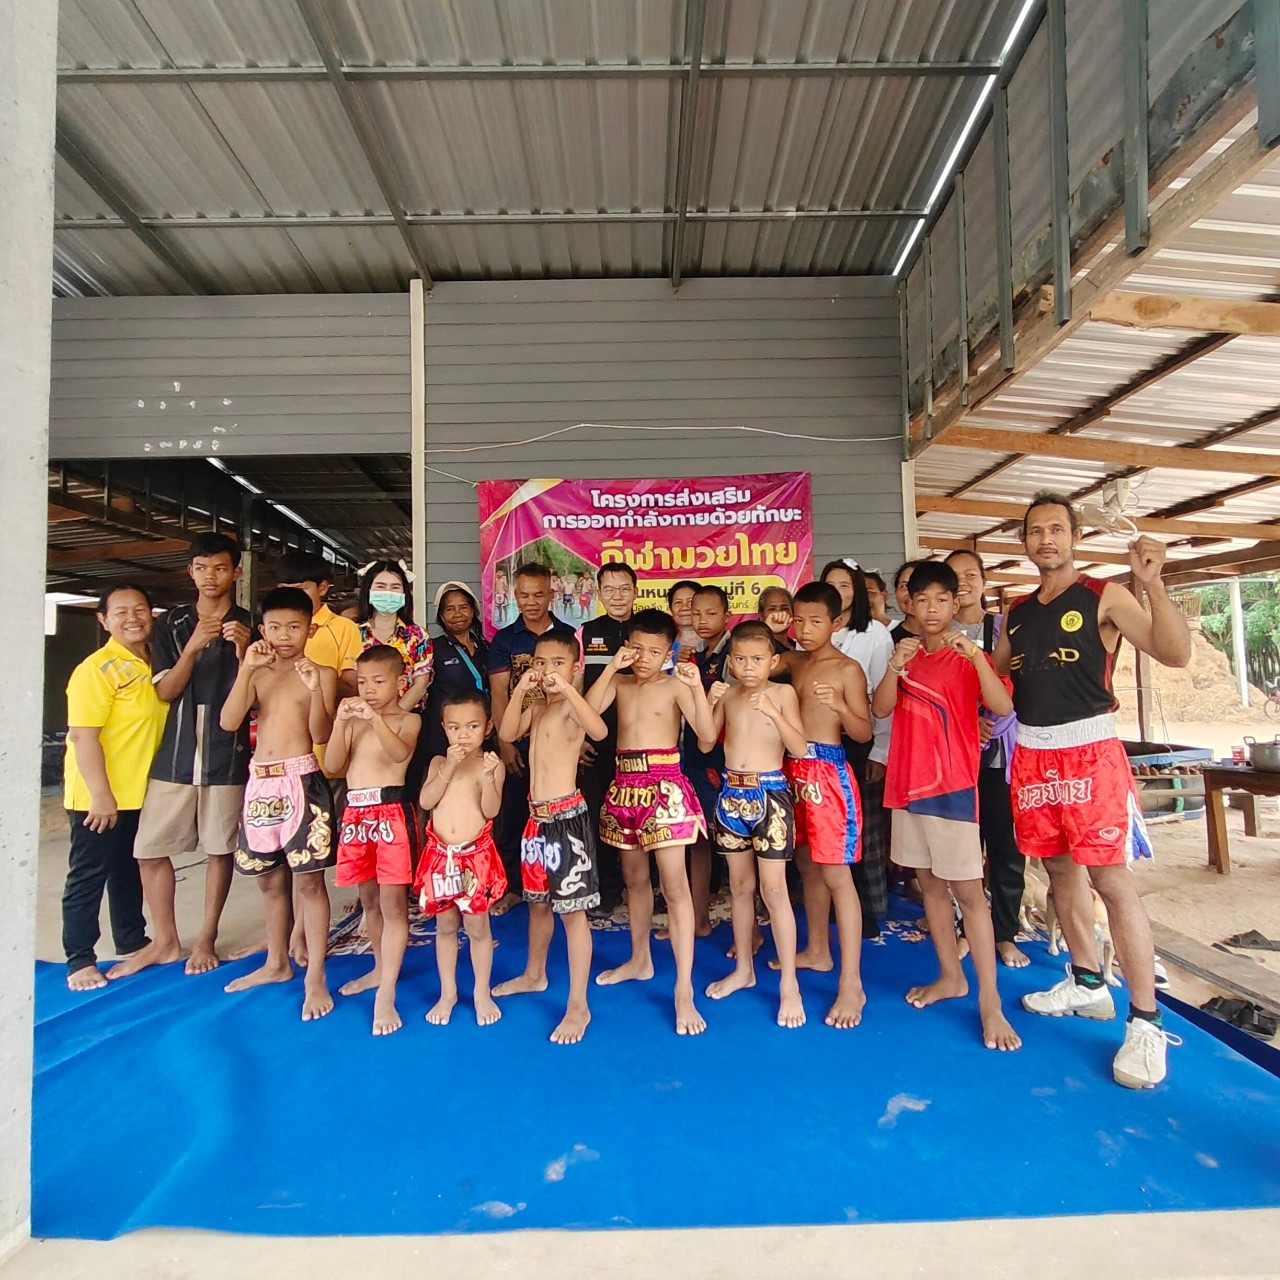 วันที่9 เมษายน 2567 ประเสริฐ สุขจิต นายกองค์การบริหารส่วนตำบลเมืองลีง ได้ร่วมเป็นเกียรติเข้าร่วมโครงการส่งเสริมการออกกำลังกายด้วยทักษะมวยไทย สนับสนุนจาก กองทุนหลักประกันสุขภาพ (สปสช.) ณ. บ้านหนองซำ ม. 6